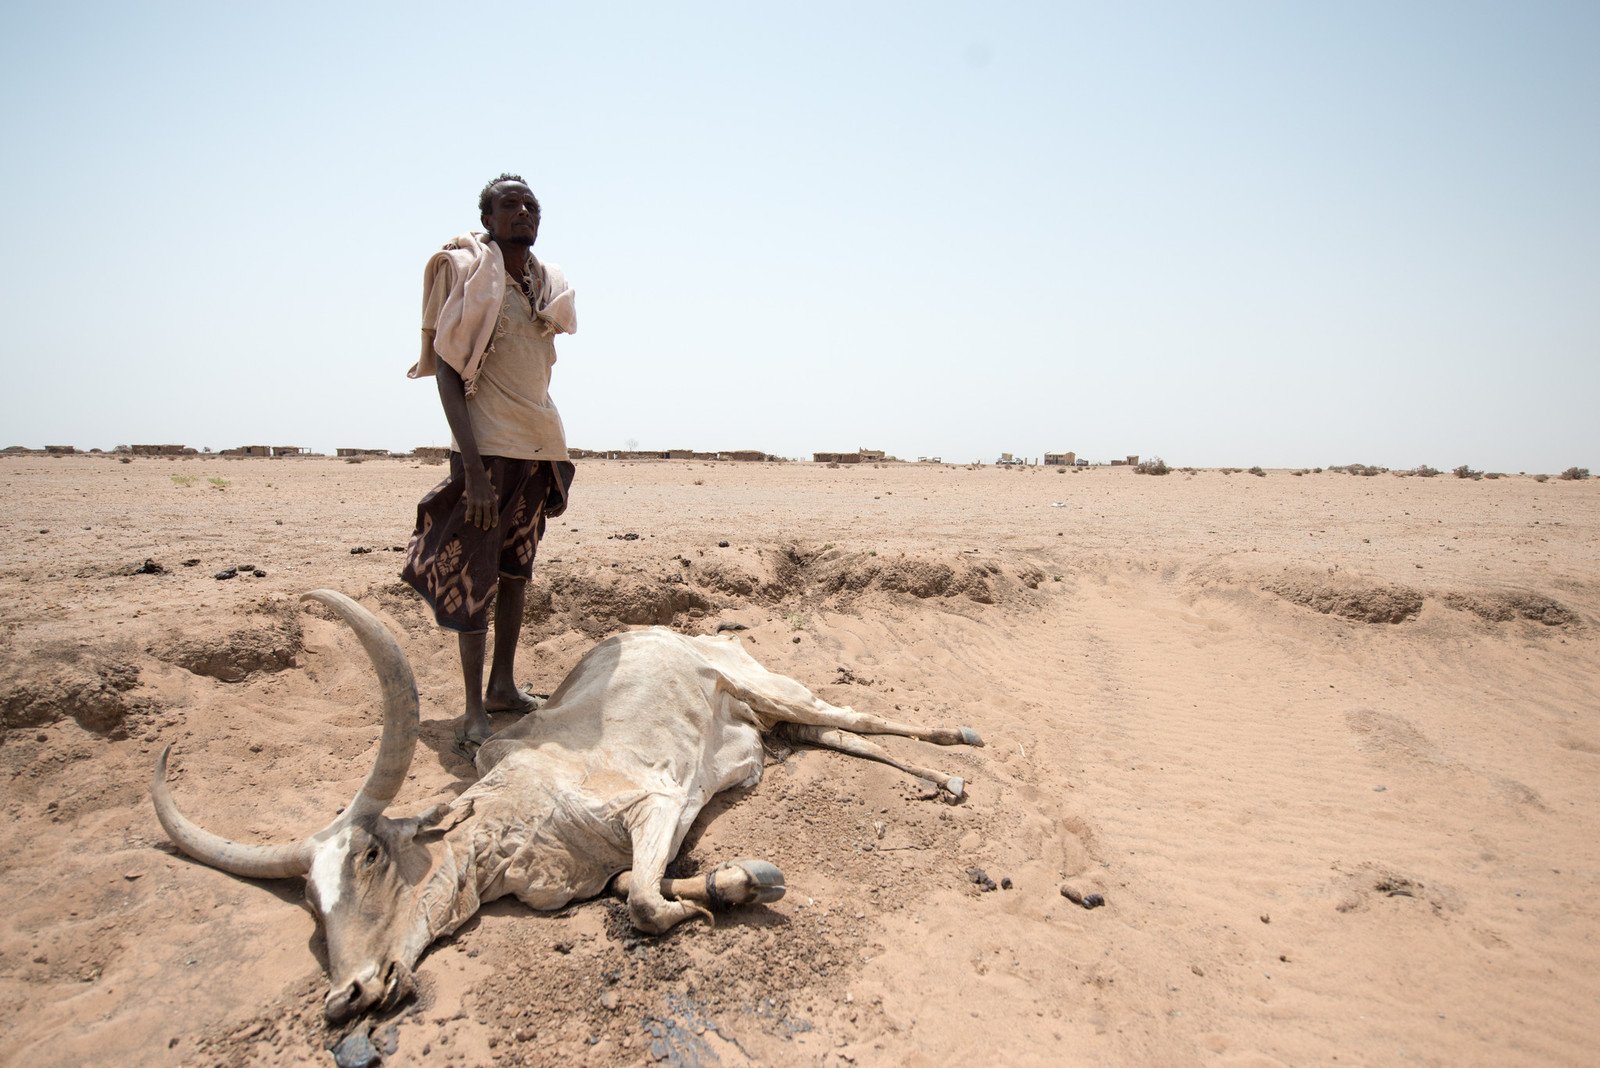 氣候變化加劇了厄爾尼諾現象，令埃塞俄比亞的索馬里地區連續多年出現嚴重旱情，牧民缺水缺糧，賴以為生的牲畜，不是瀕死就是已經死亡。樂施會自2011年起在當地協助農戶及牧民解決水荒、發展生計、加強防災意識及自救能力。（照片︰潘蔚能 / 樂施會義務攝影師）